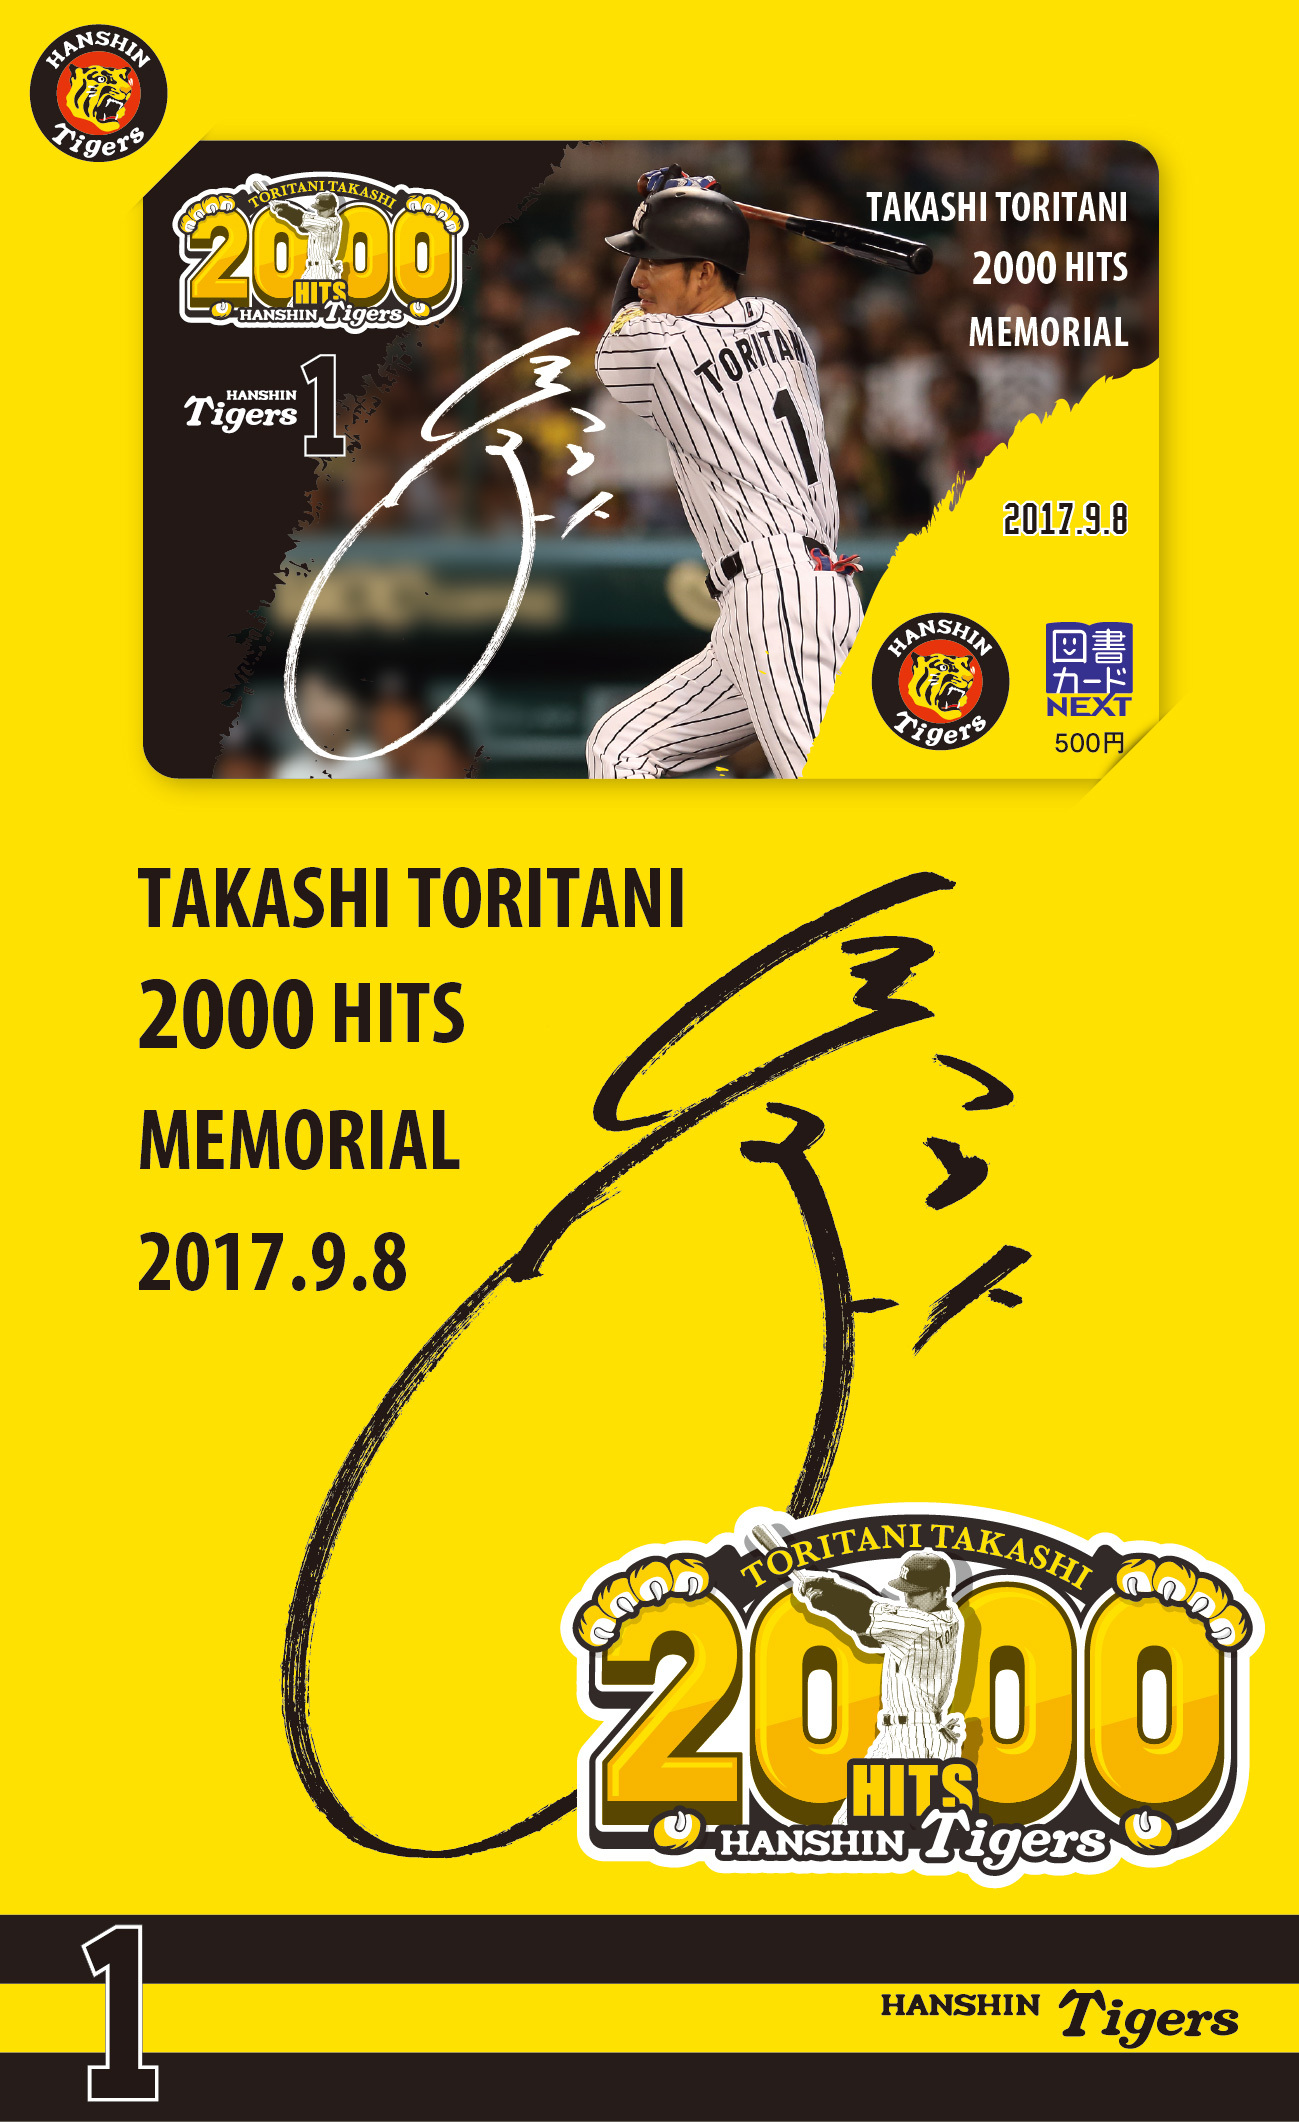 日販オリジナル図書カード企画第7弾「阪神タイガース鳥谷敬選手2000本 